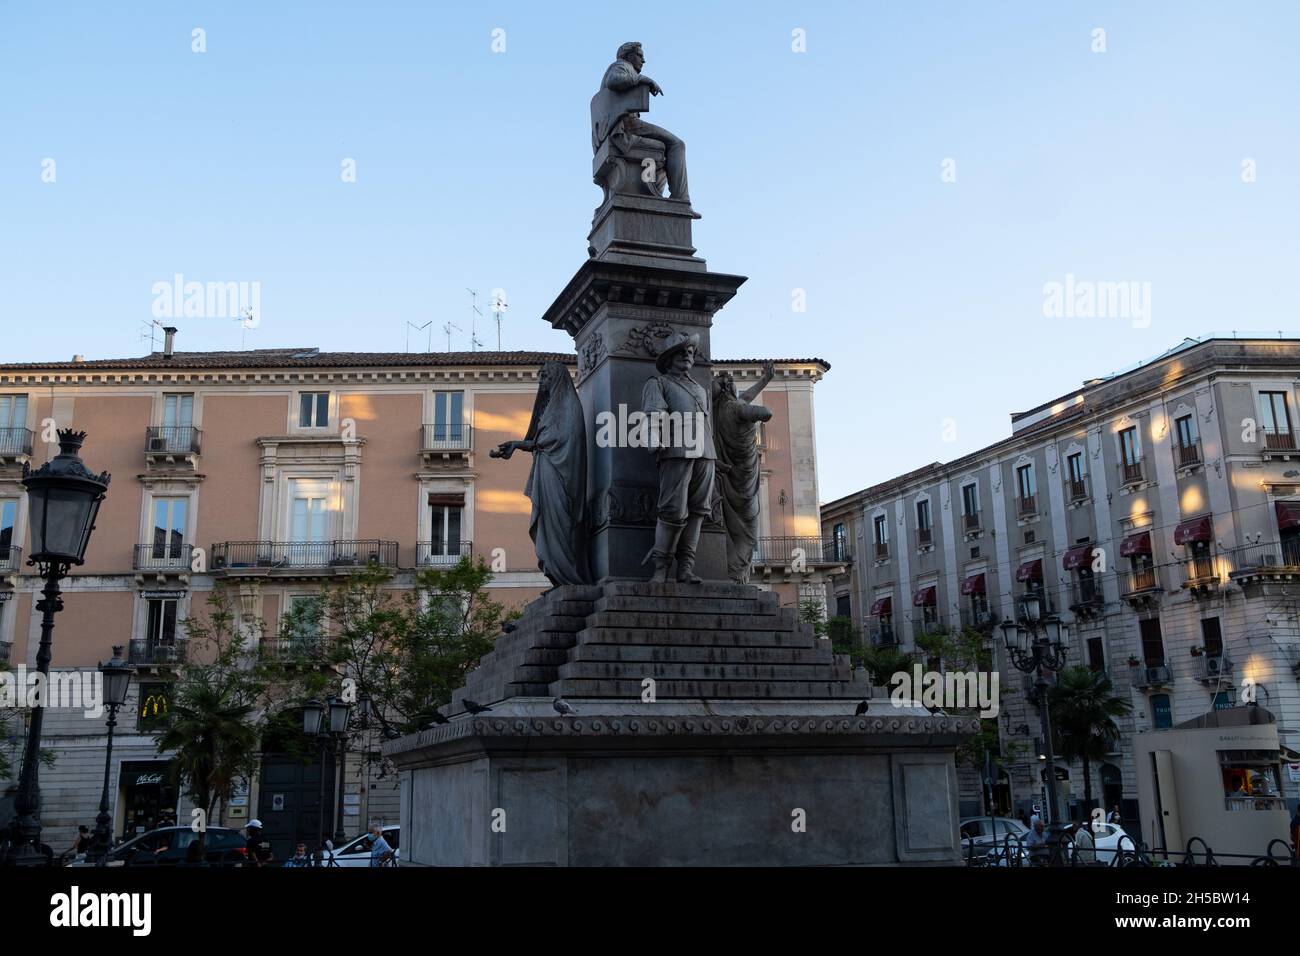 Sicilia, Catania - 22 de julio de 2021: El Monumento a Vincenzo Bellini Foto de stock